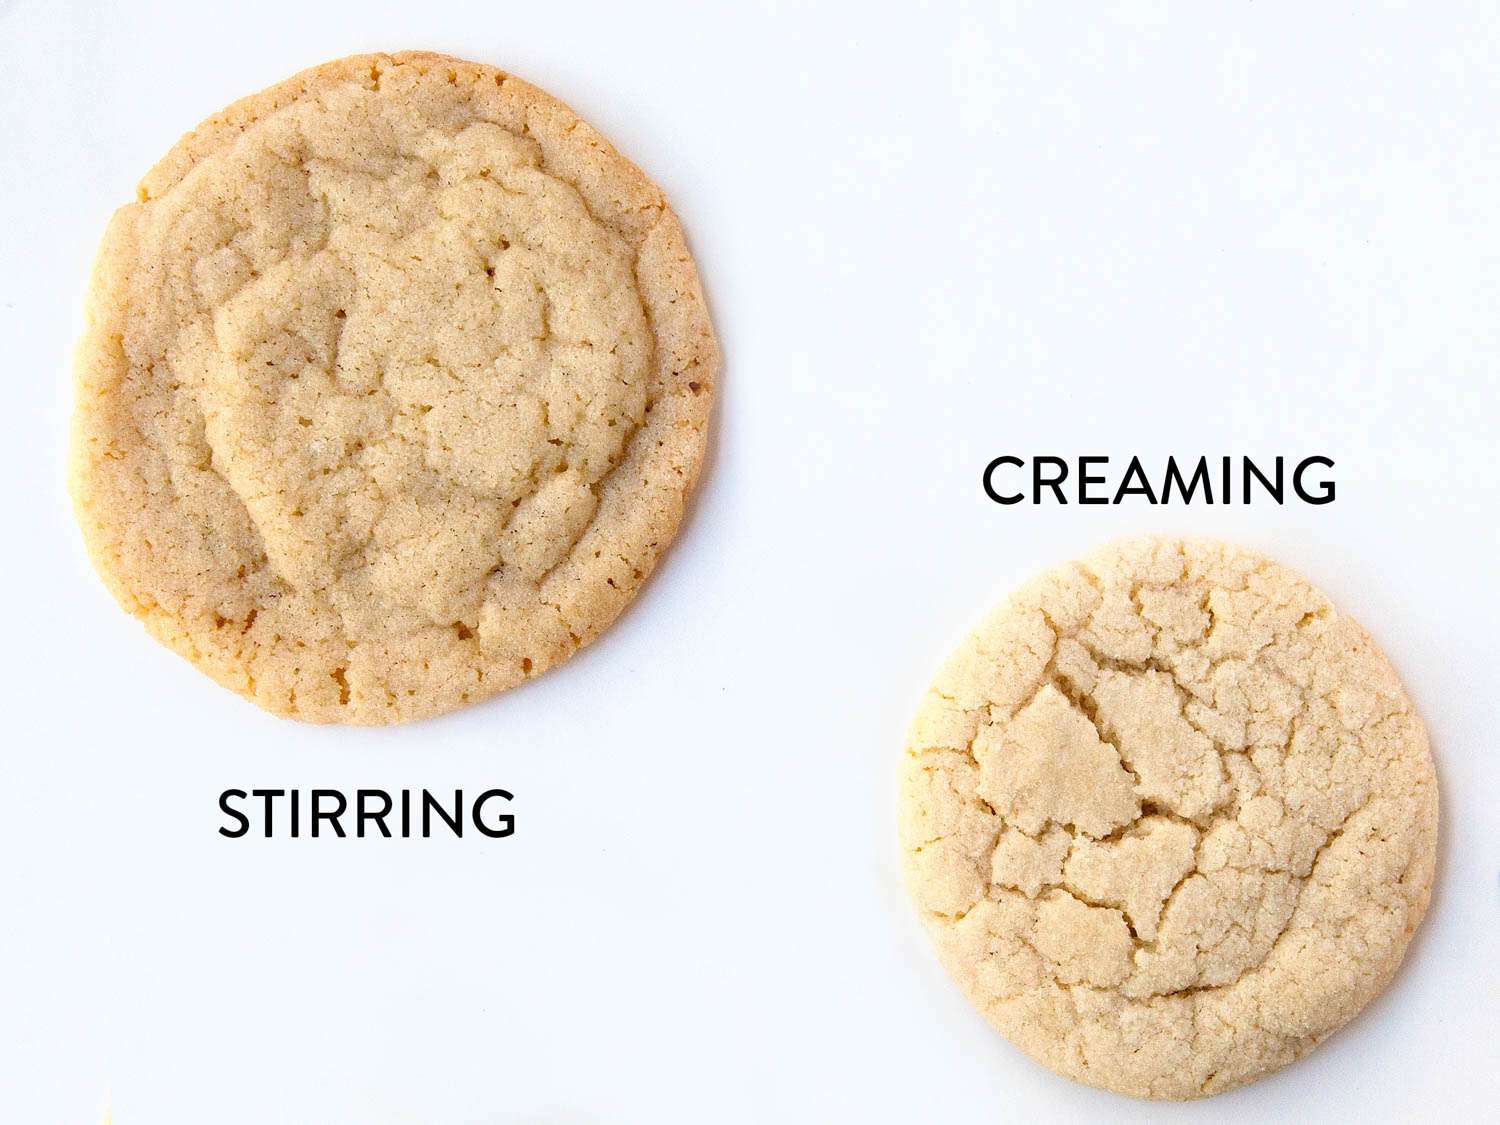 两个甜饼并排比较，一个搅拌了面糊，另一个打了奶油面糊。搅拌过的饼干更容易散开，奶油化的饼干更容易发胀。